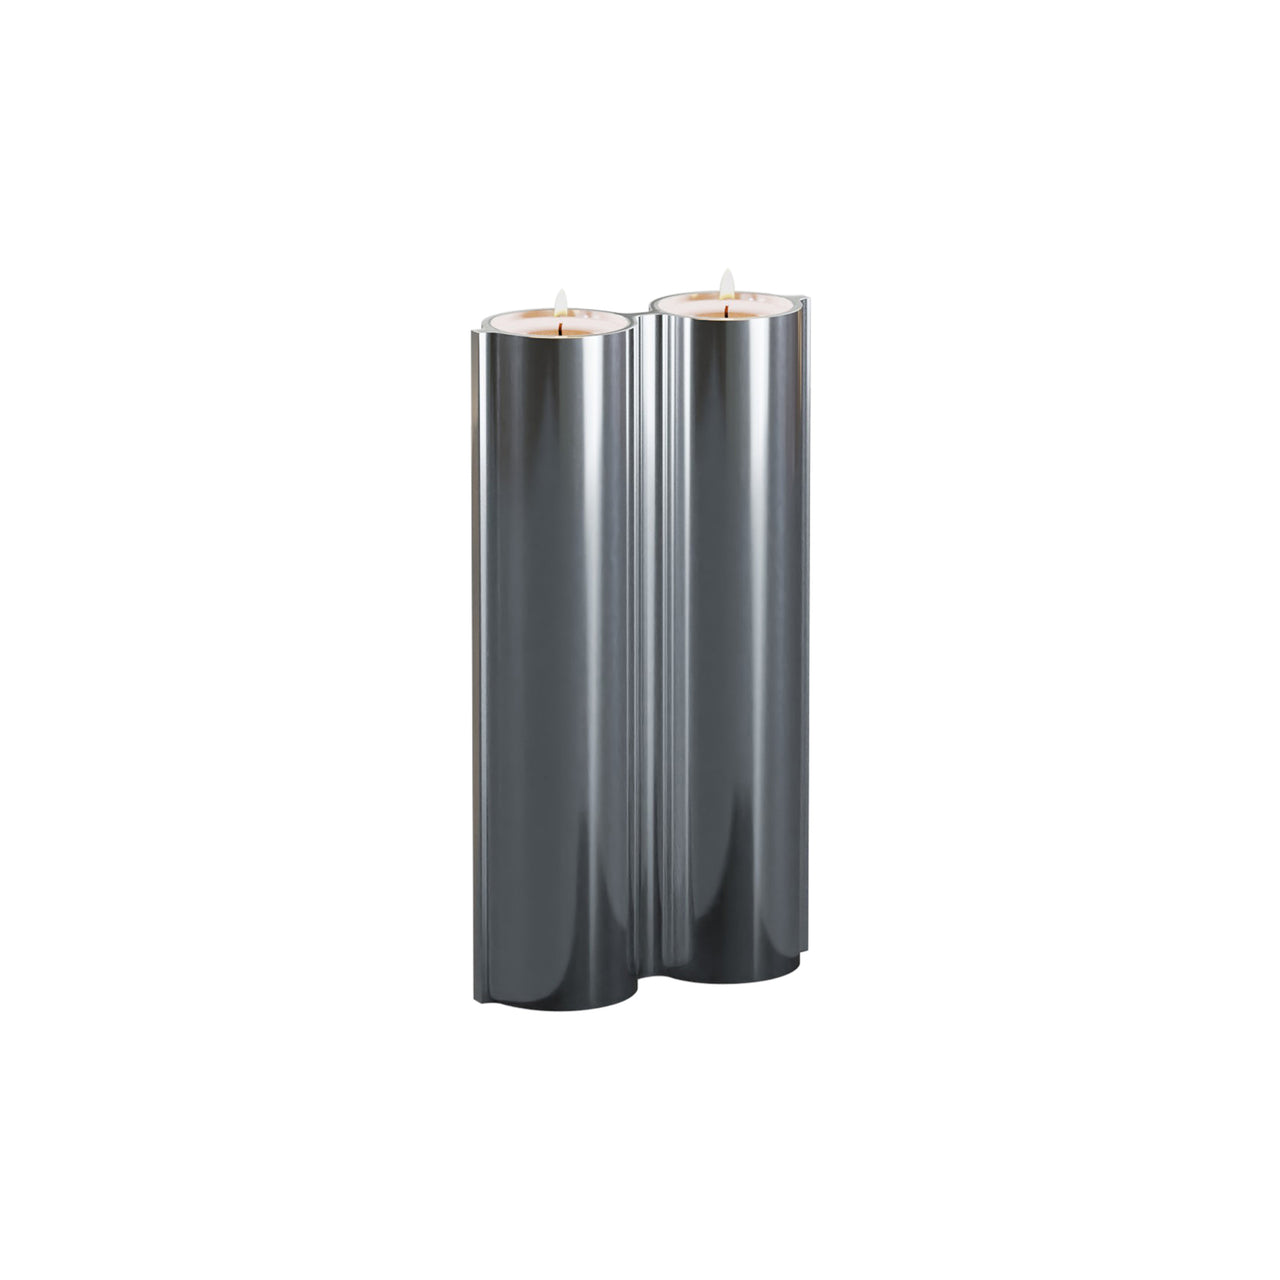 Silo 2VK Vase: Mirror Polished Aluminum